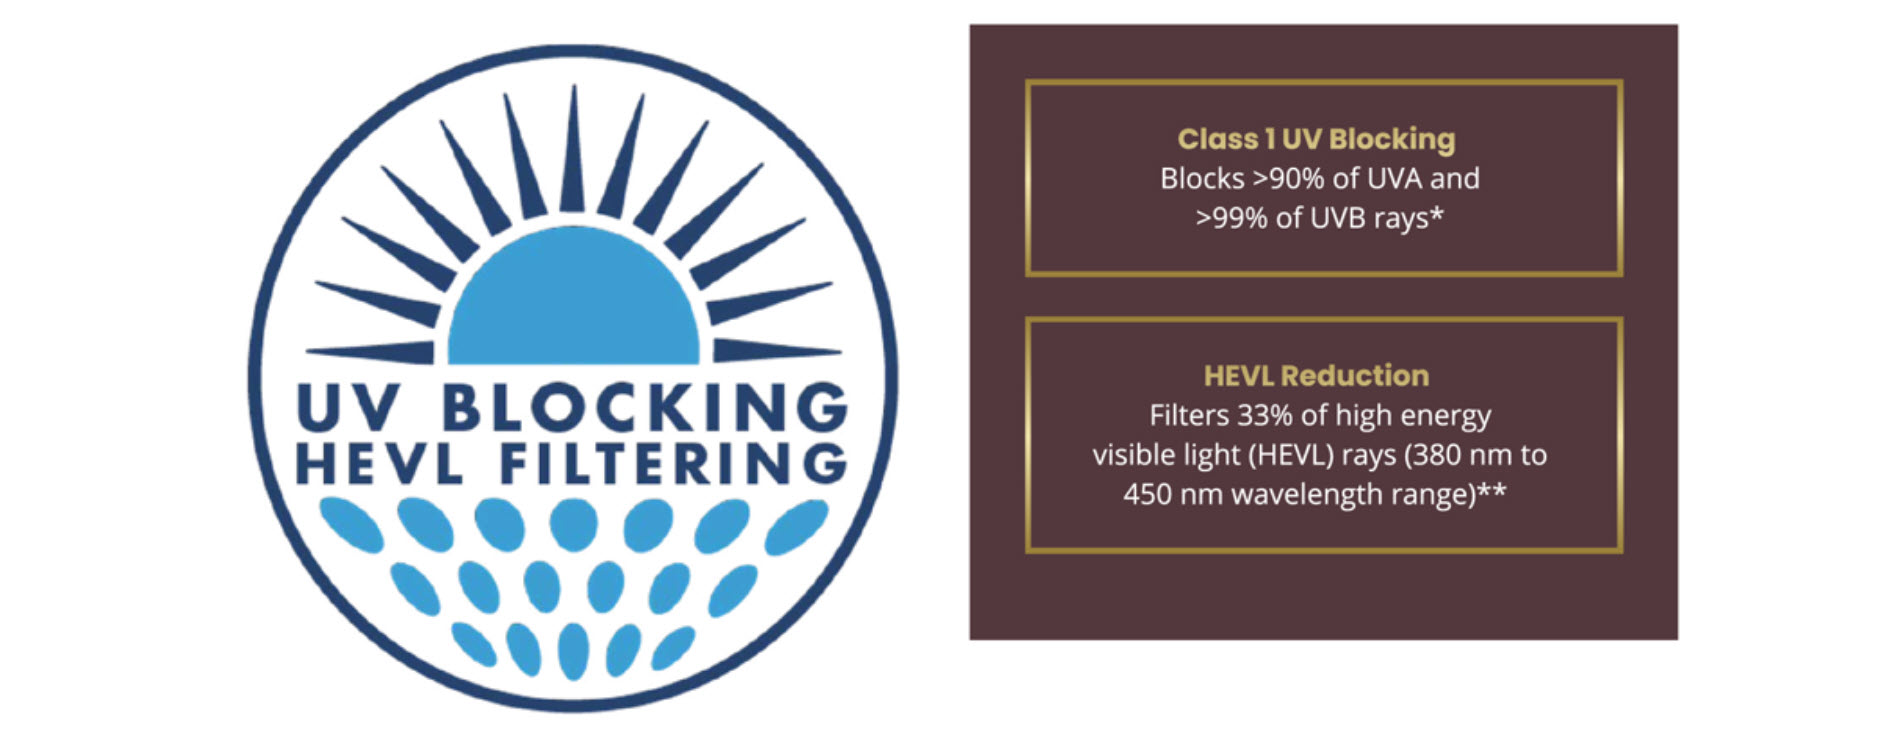 UV Blocking HEVL Filtering